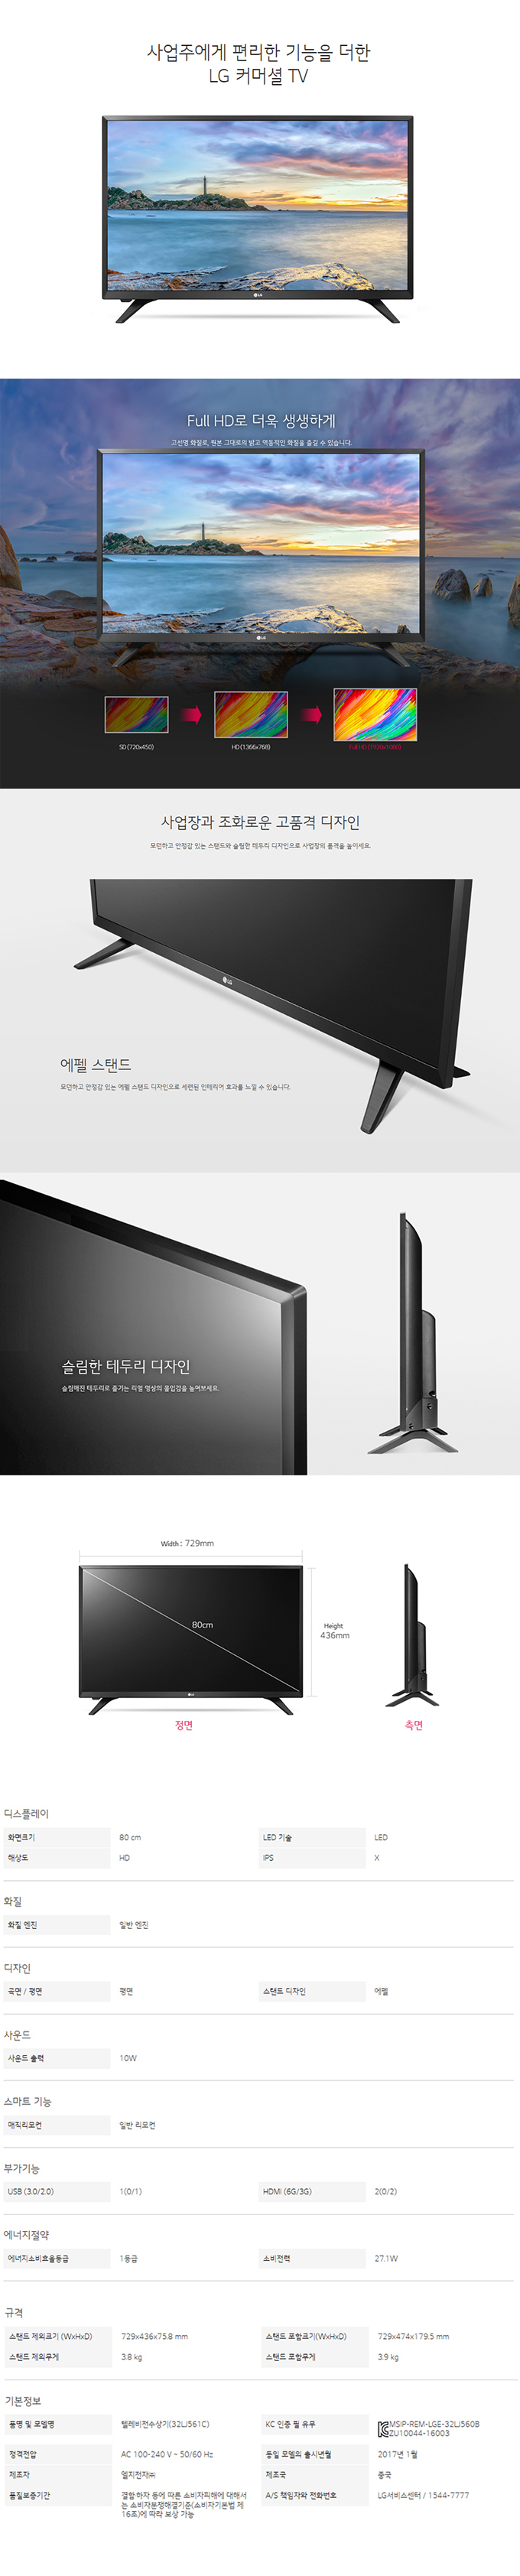 광진케이블 - LG 32인치 LED TV (32LK561C) 상세보기